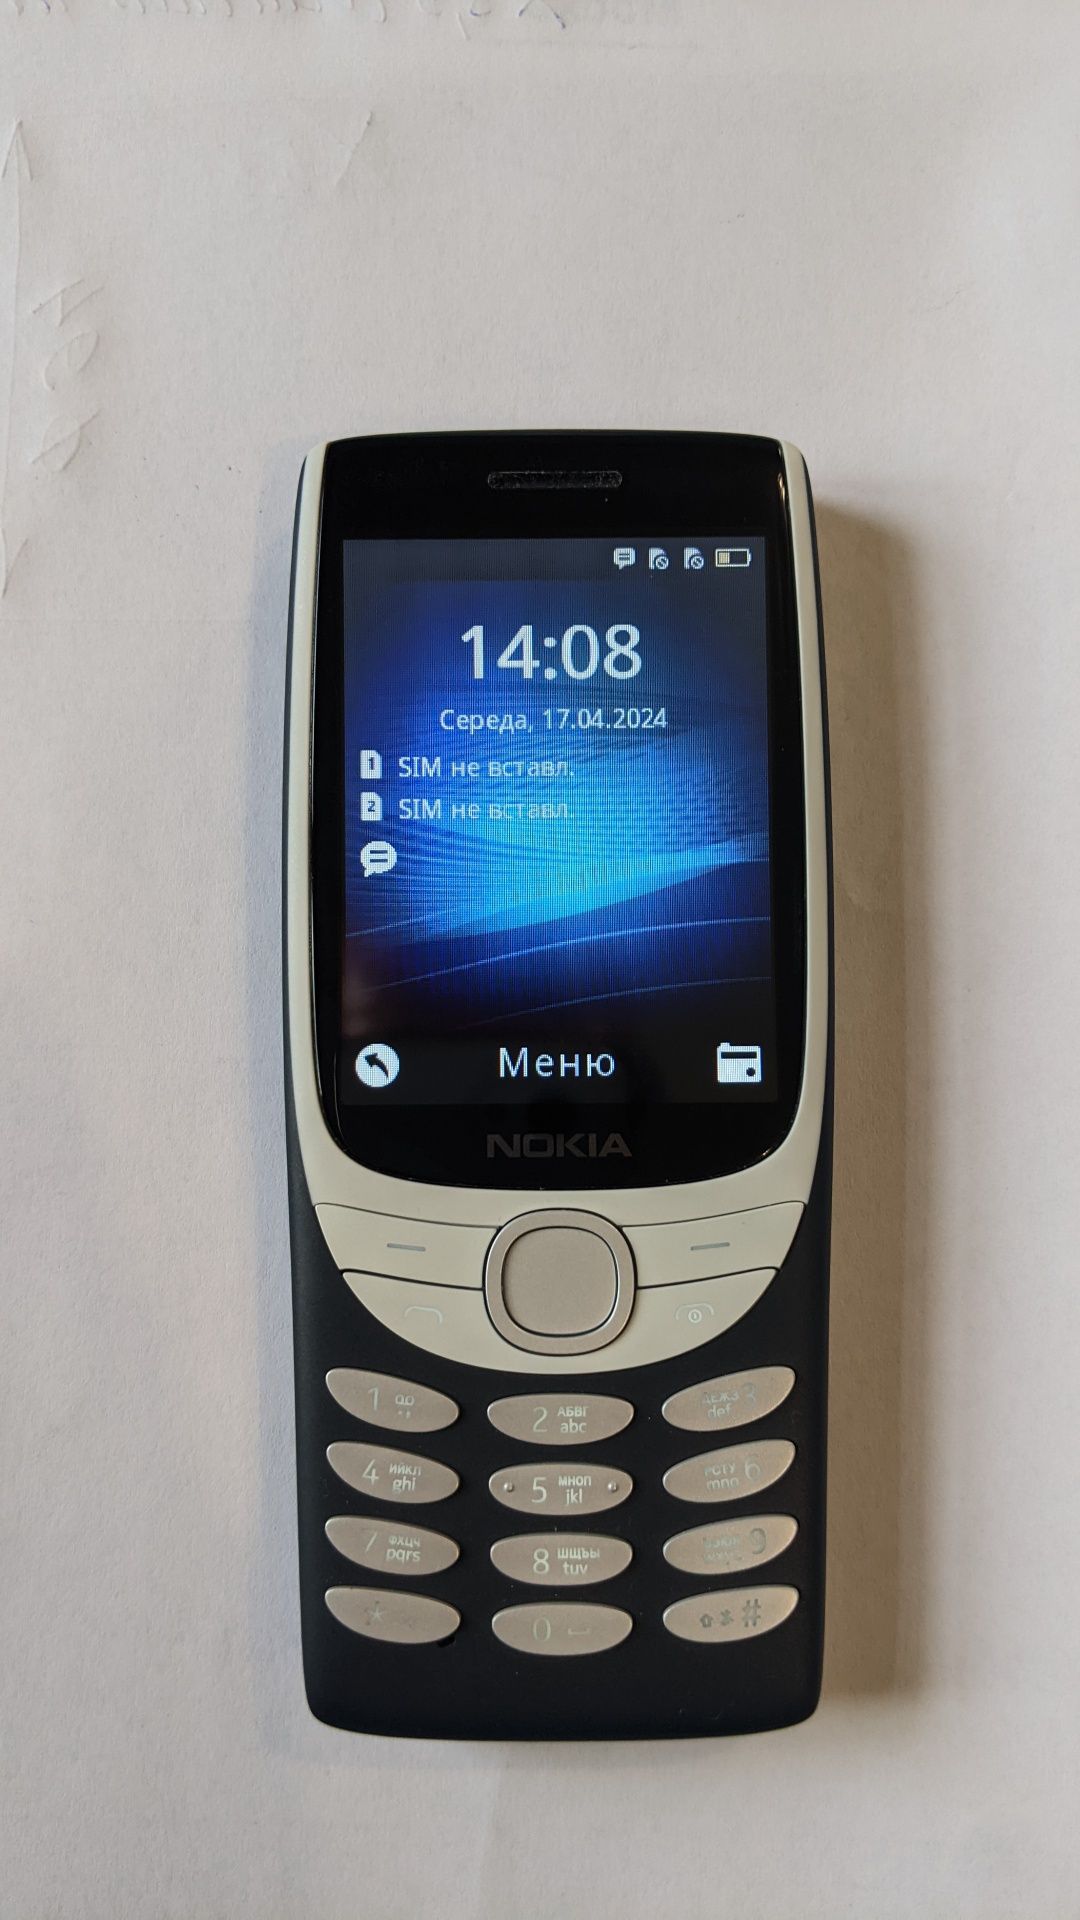 Продам Nokia 8210 4g